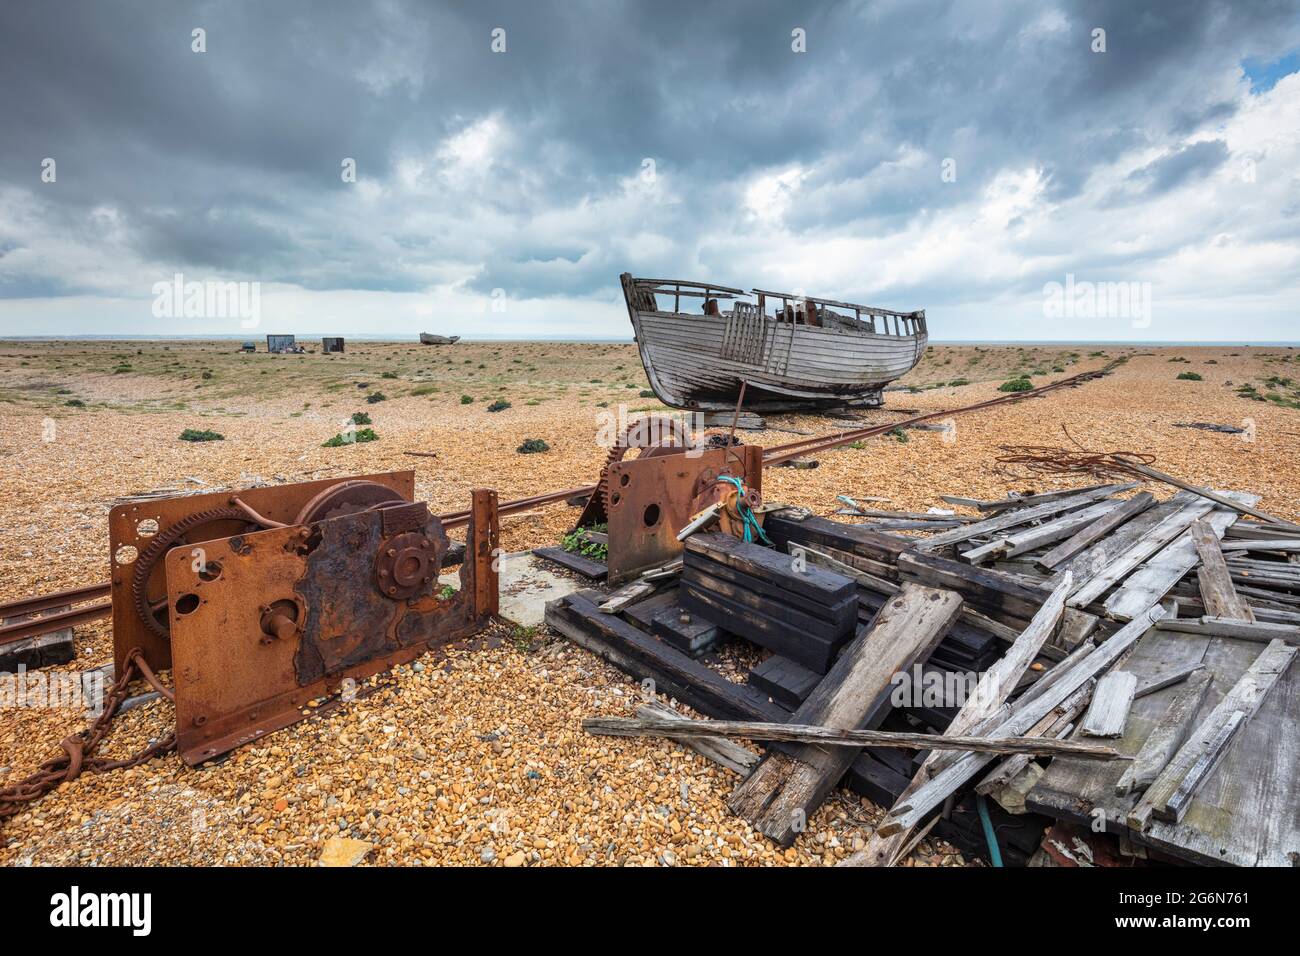 Bateau de pêche naufragé et hangar effondré sur la plage de galets à la réserve naturelle nationale de Dungeness Kent Angleterre GB Europe Banque D'Images